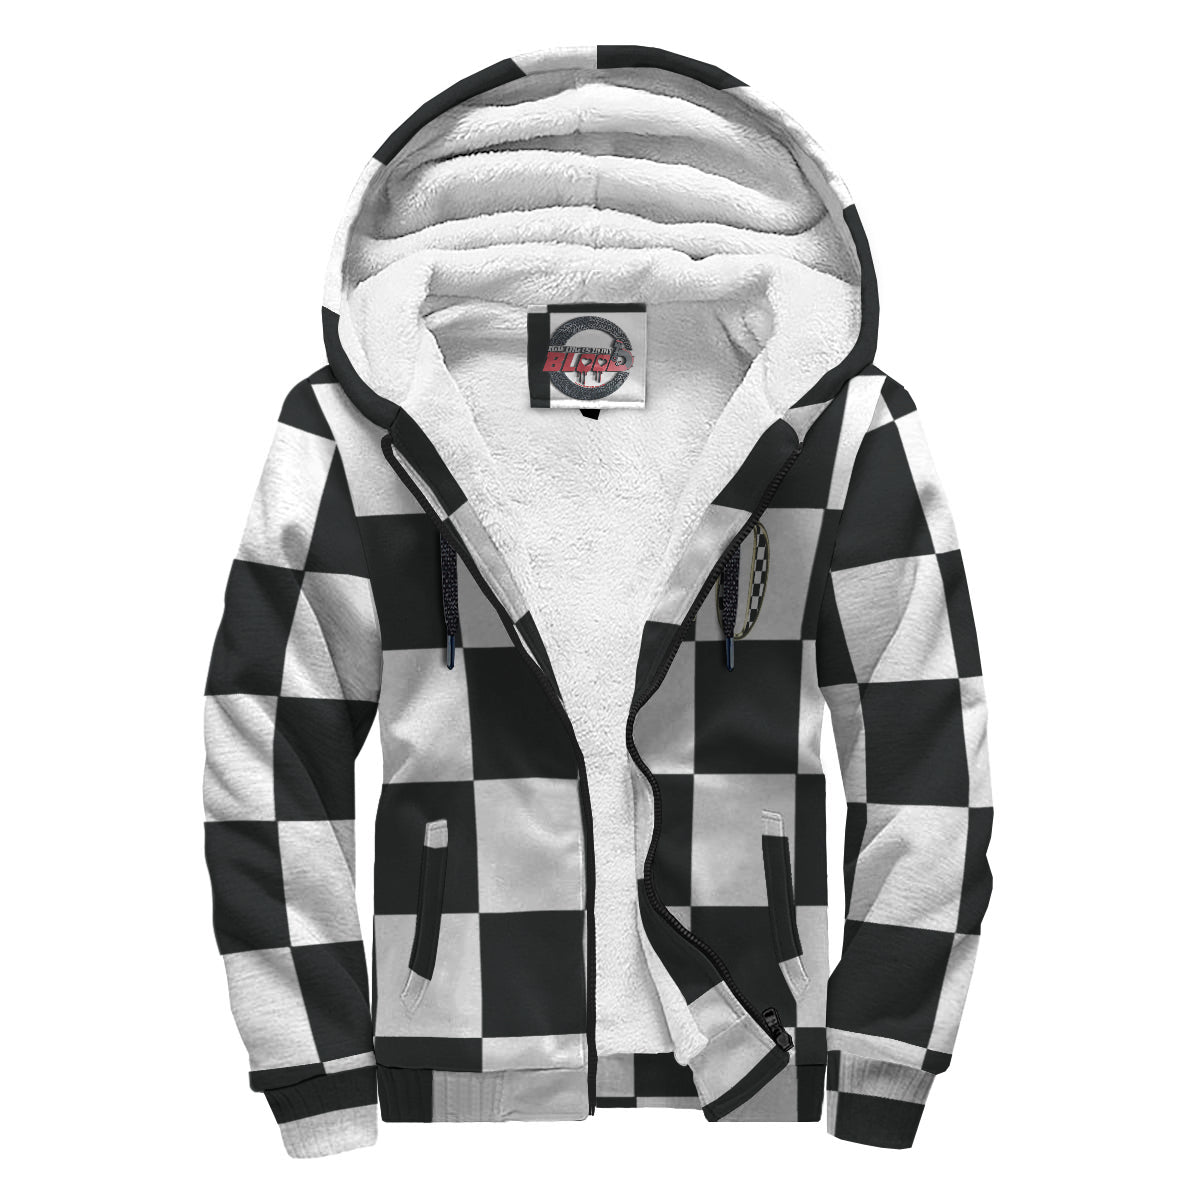 Custom racing checkered flag sherpa jacket N20